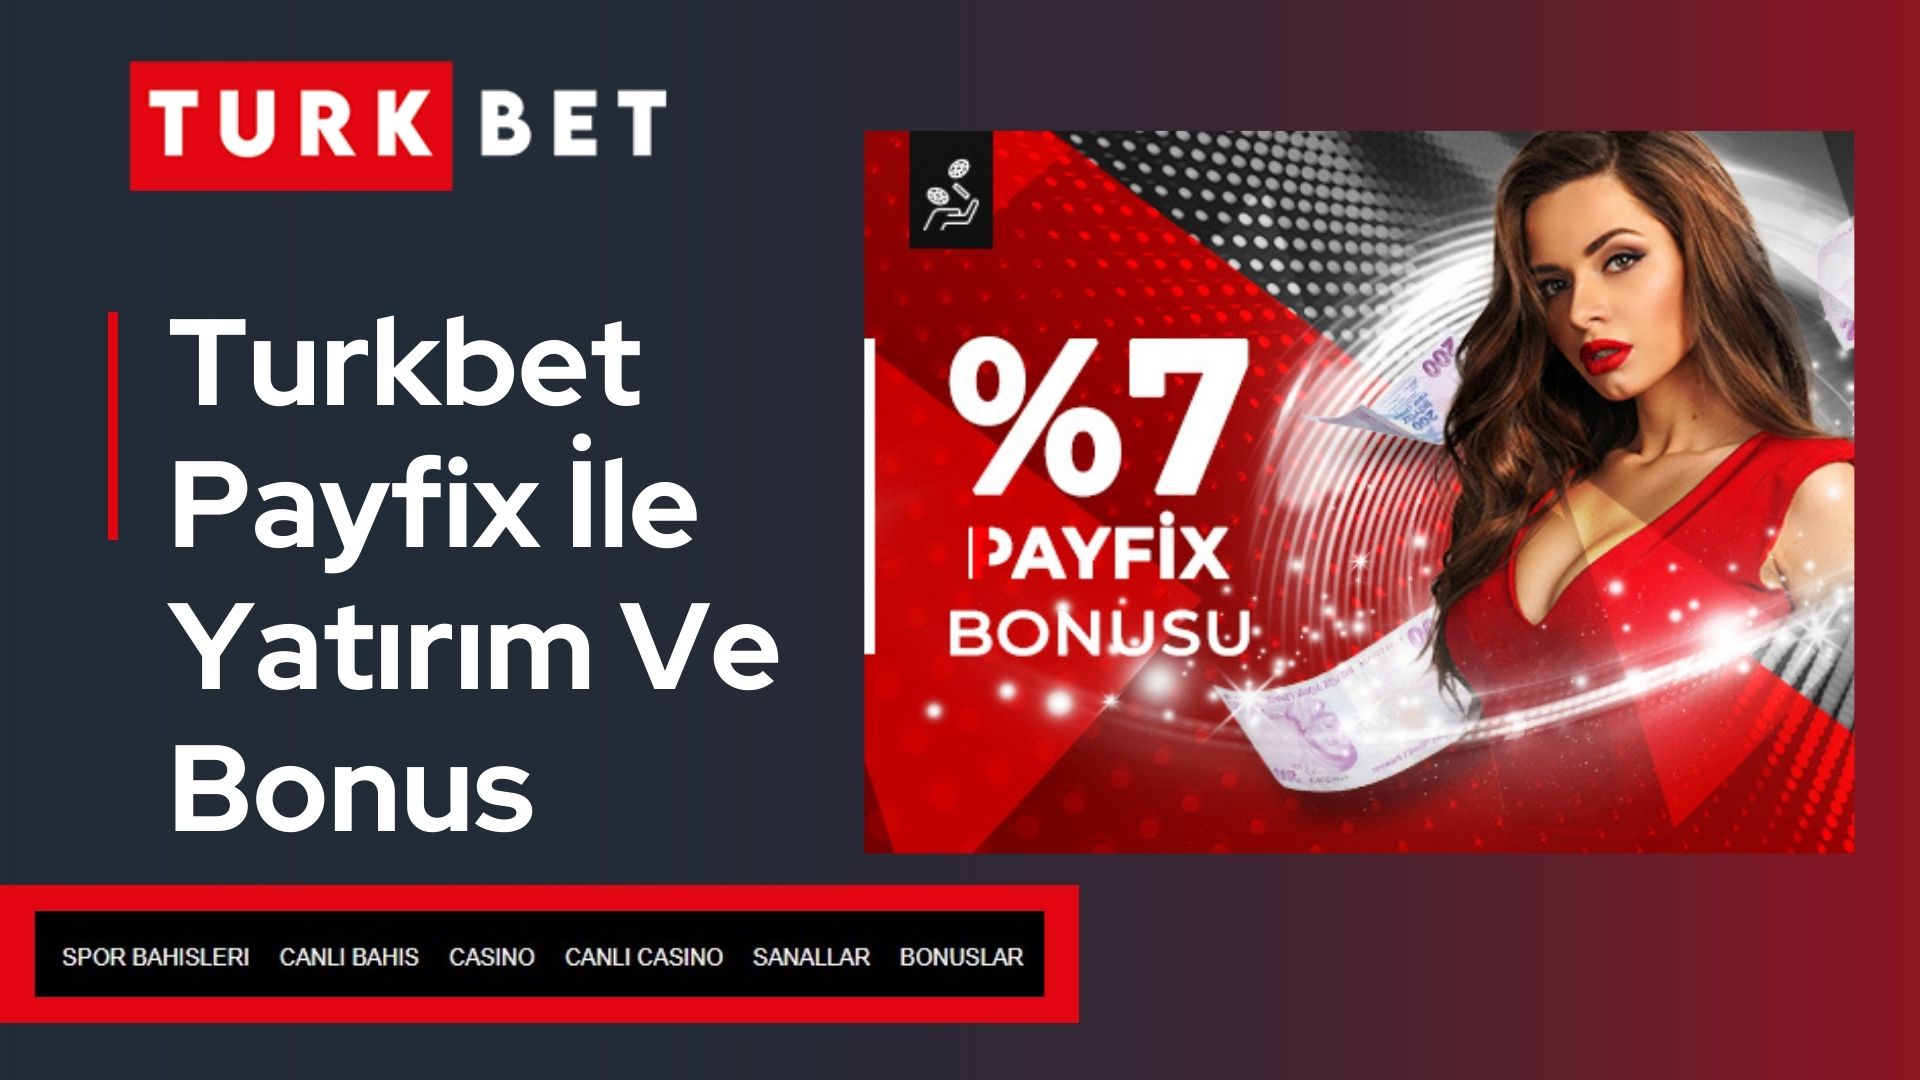 Turkbet Payfix ile Yatırım ve Bonus